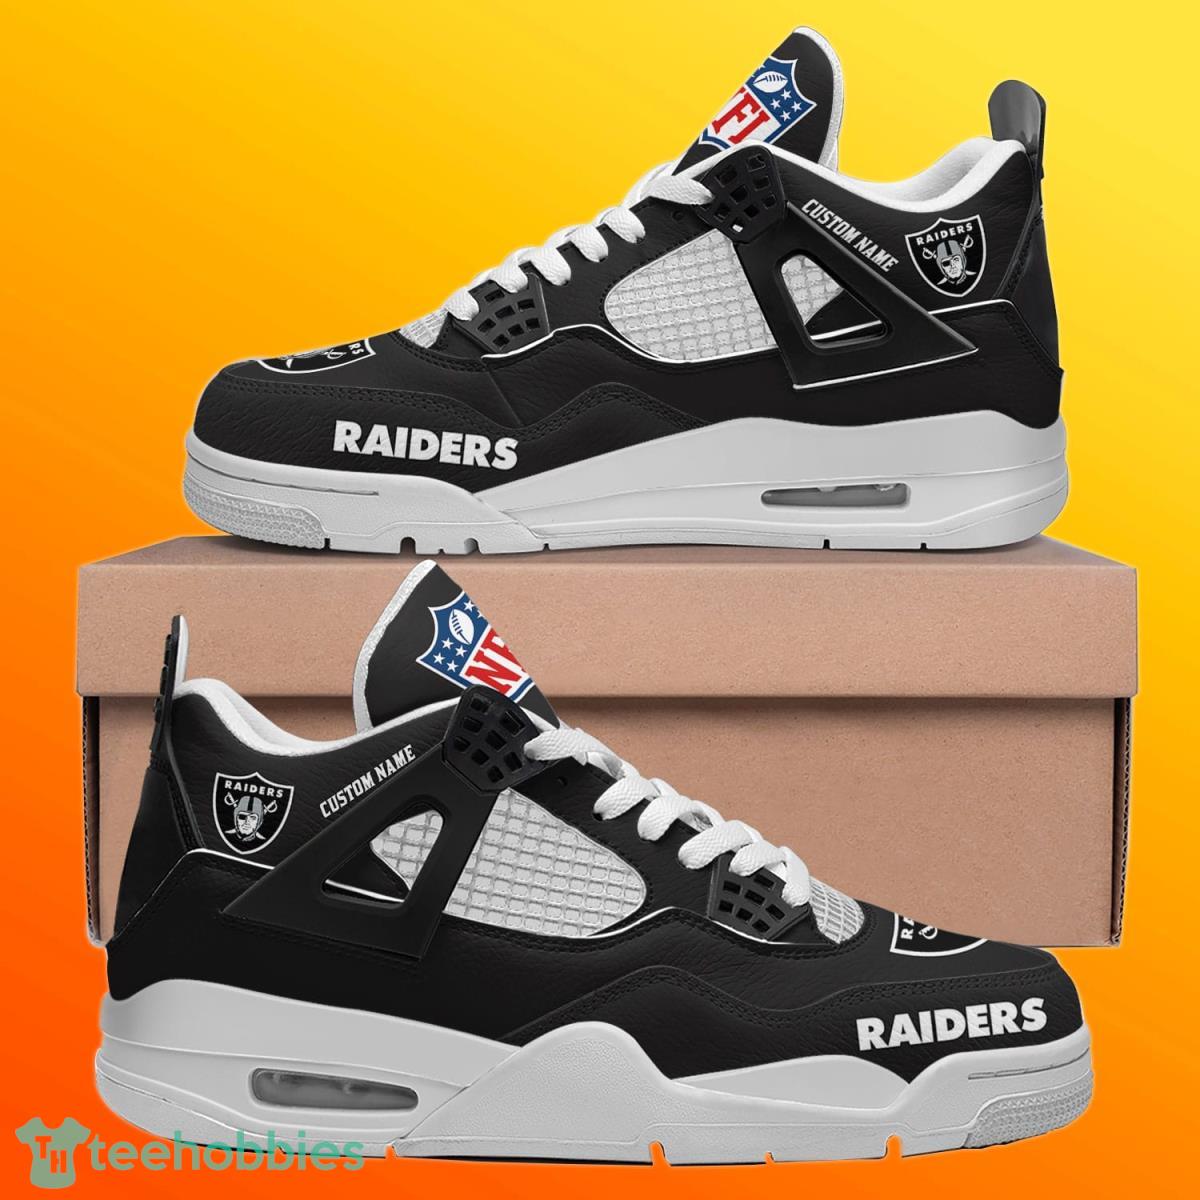 Las Vegas Raiders Air Jordan 11 Custom Name Shoes - Freedomdesign